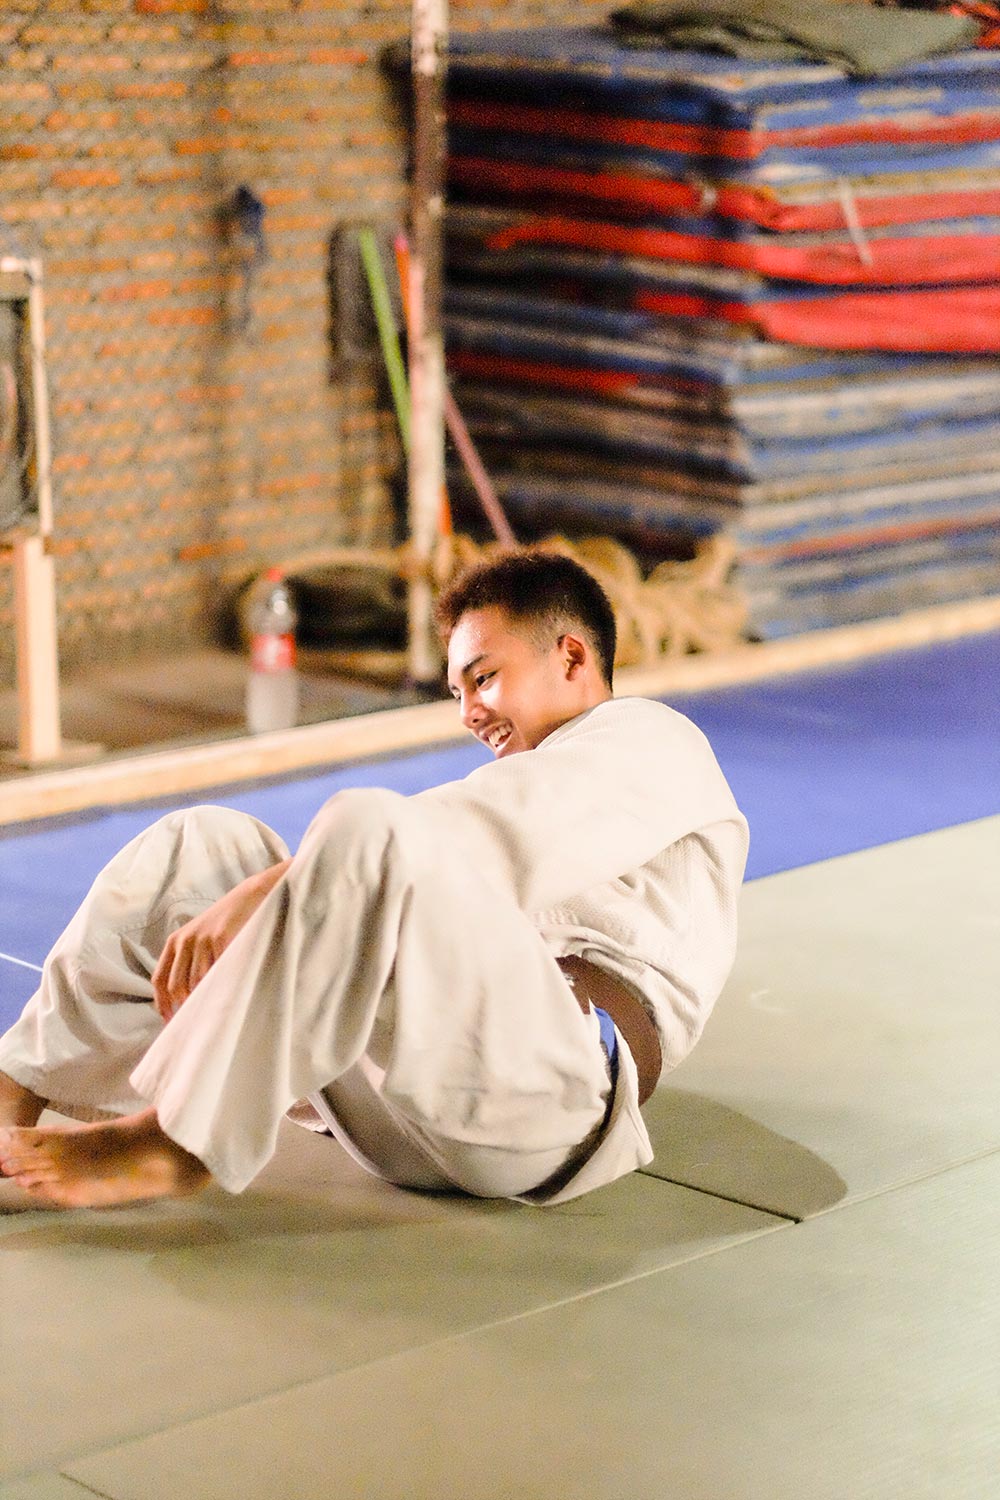 ohelterskelter.com blind judo indonesia